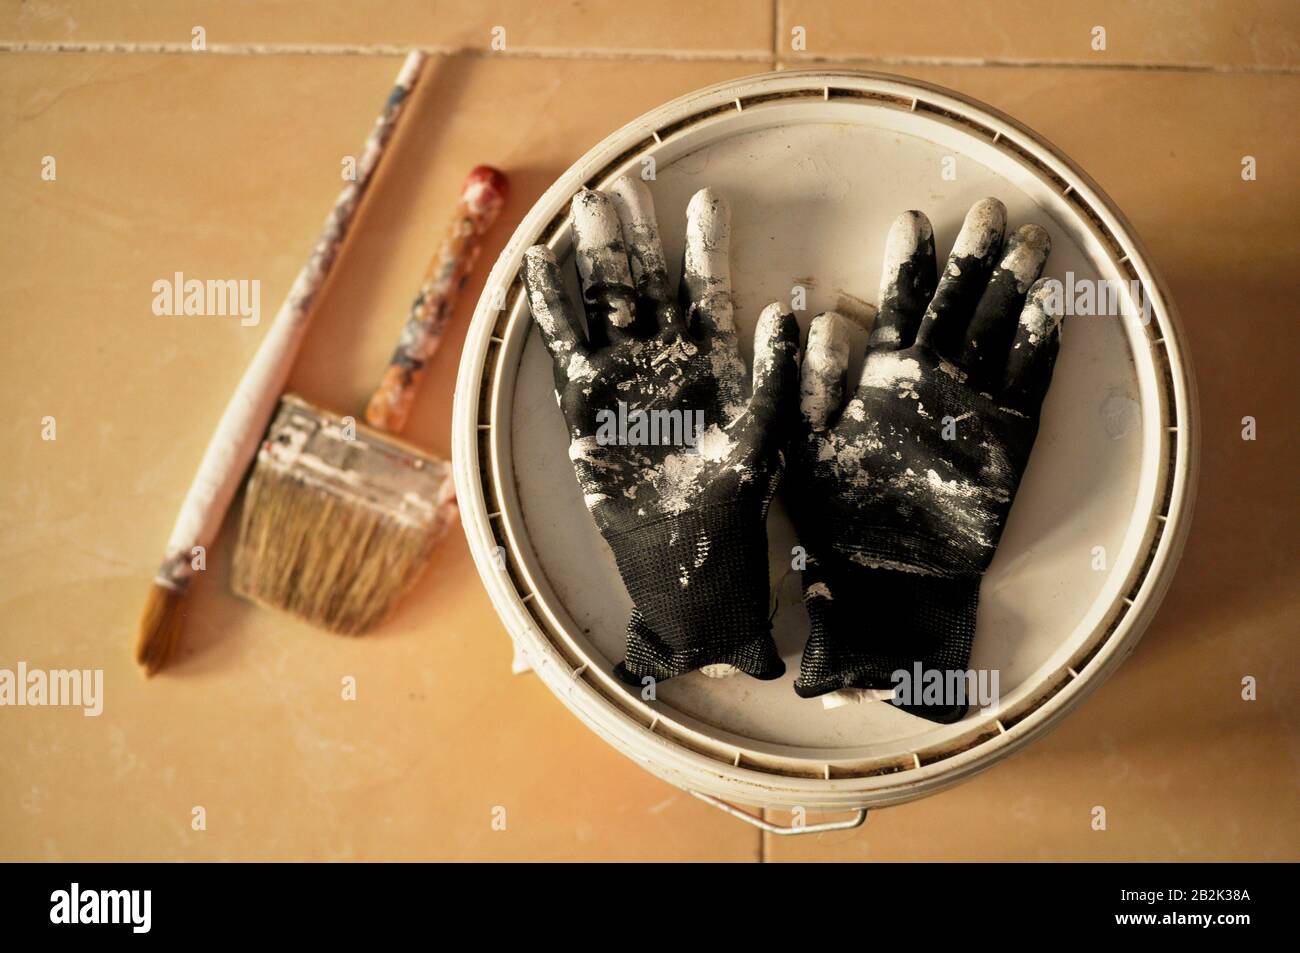 Peinture sur le sol après utilisation. Peindre des gants, une casserole et des brosses avec de la peinture blanche au milieu d'une maison en construction. Banque D'Images